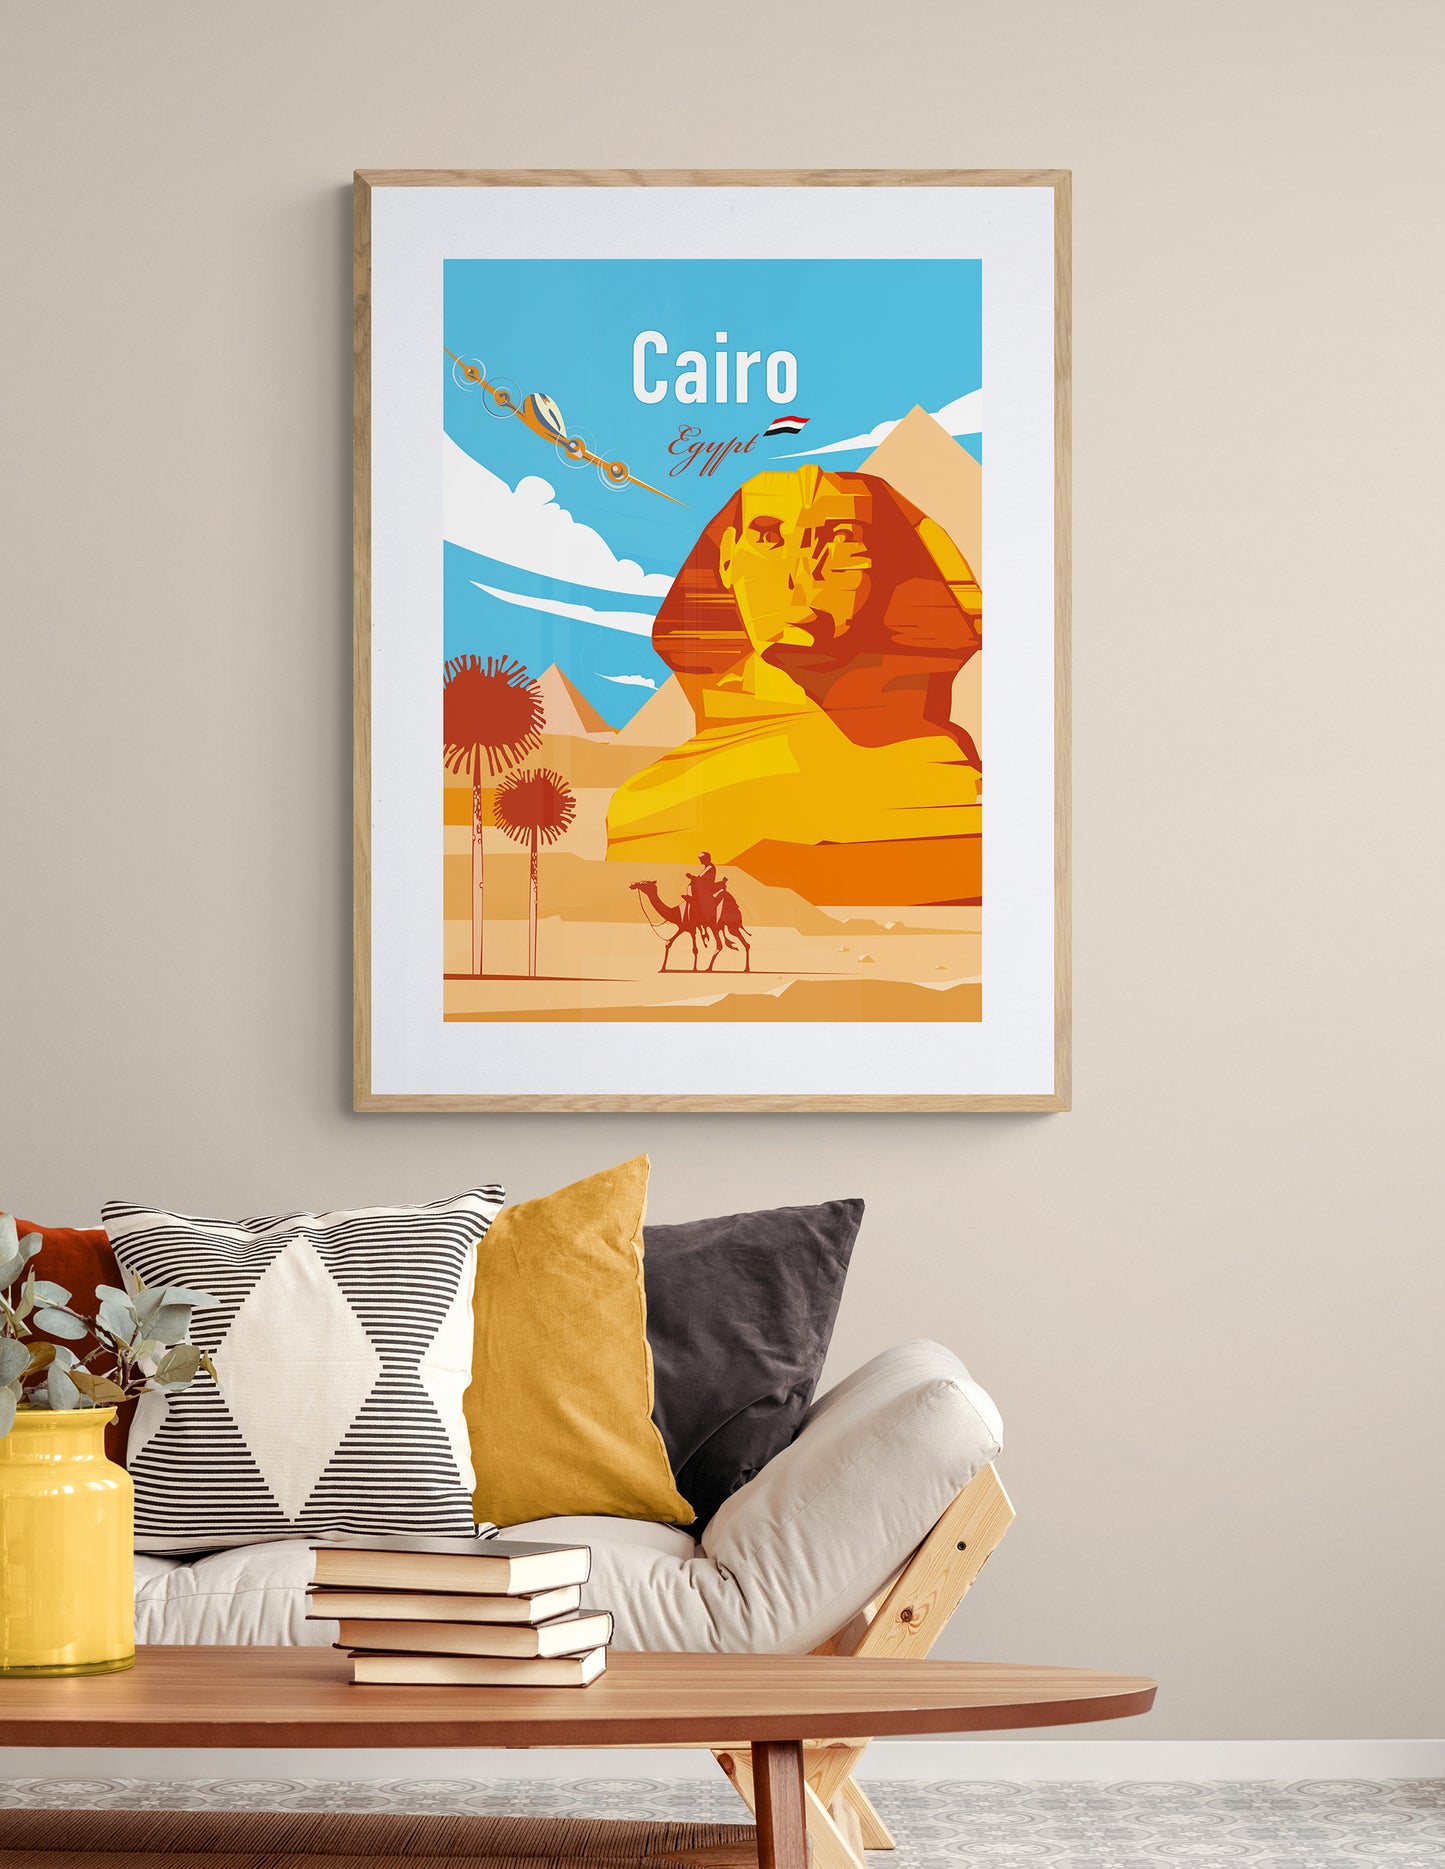 Cairo Egypt Travel Poster / Giza Sphinx Art Print